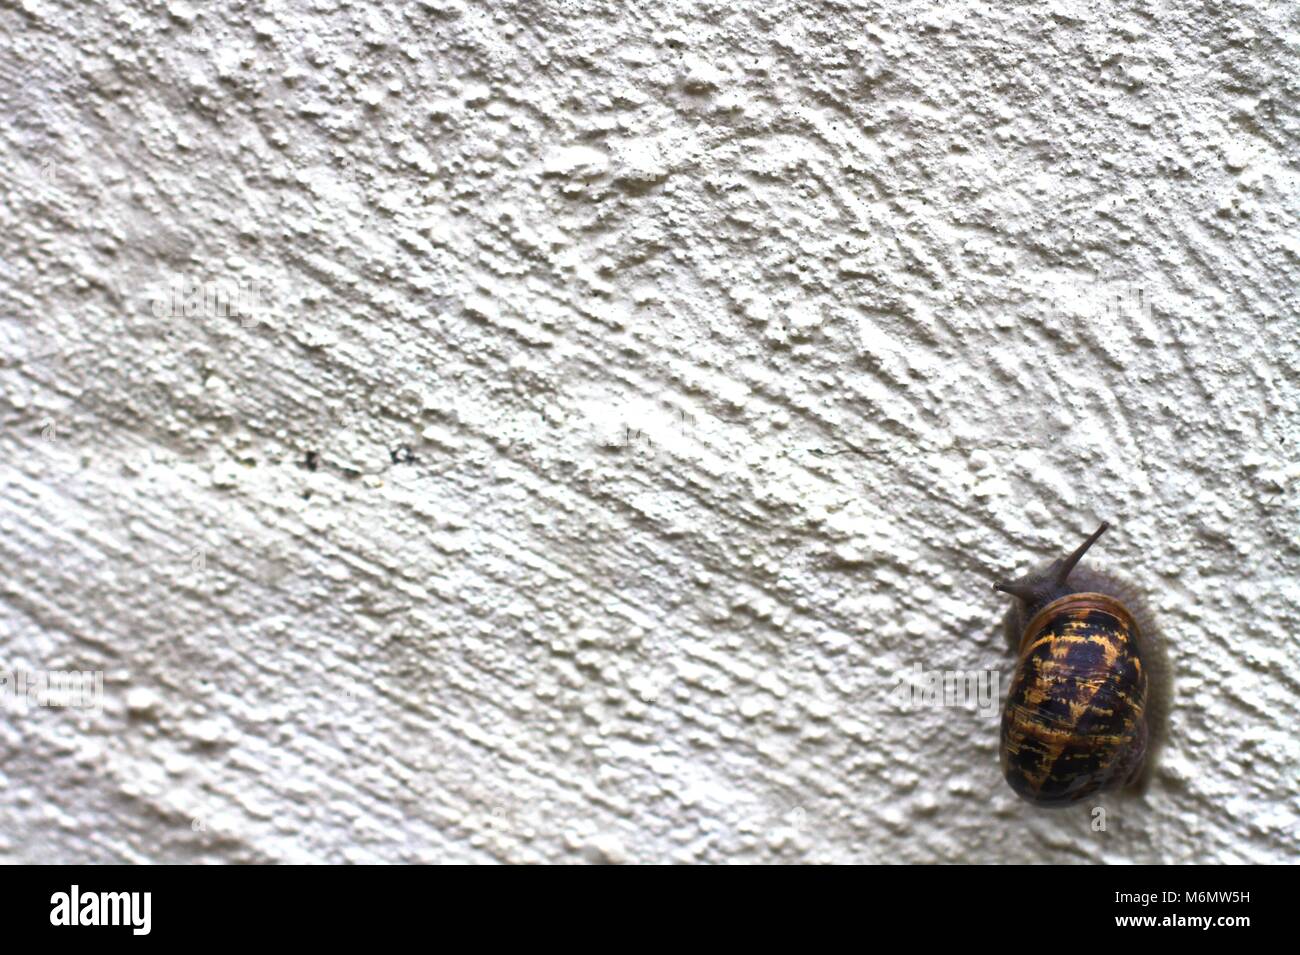 Garden snail climbing up rough white wall. Stock Photo